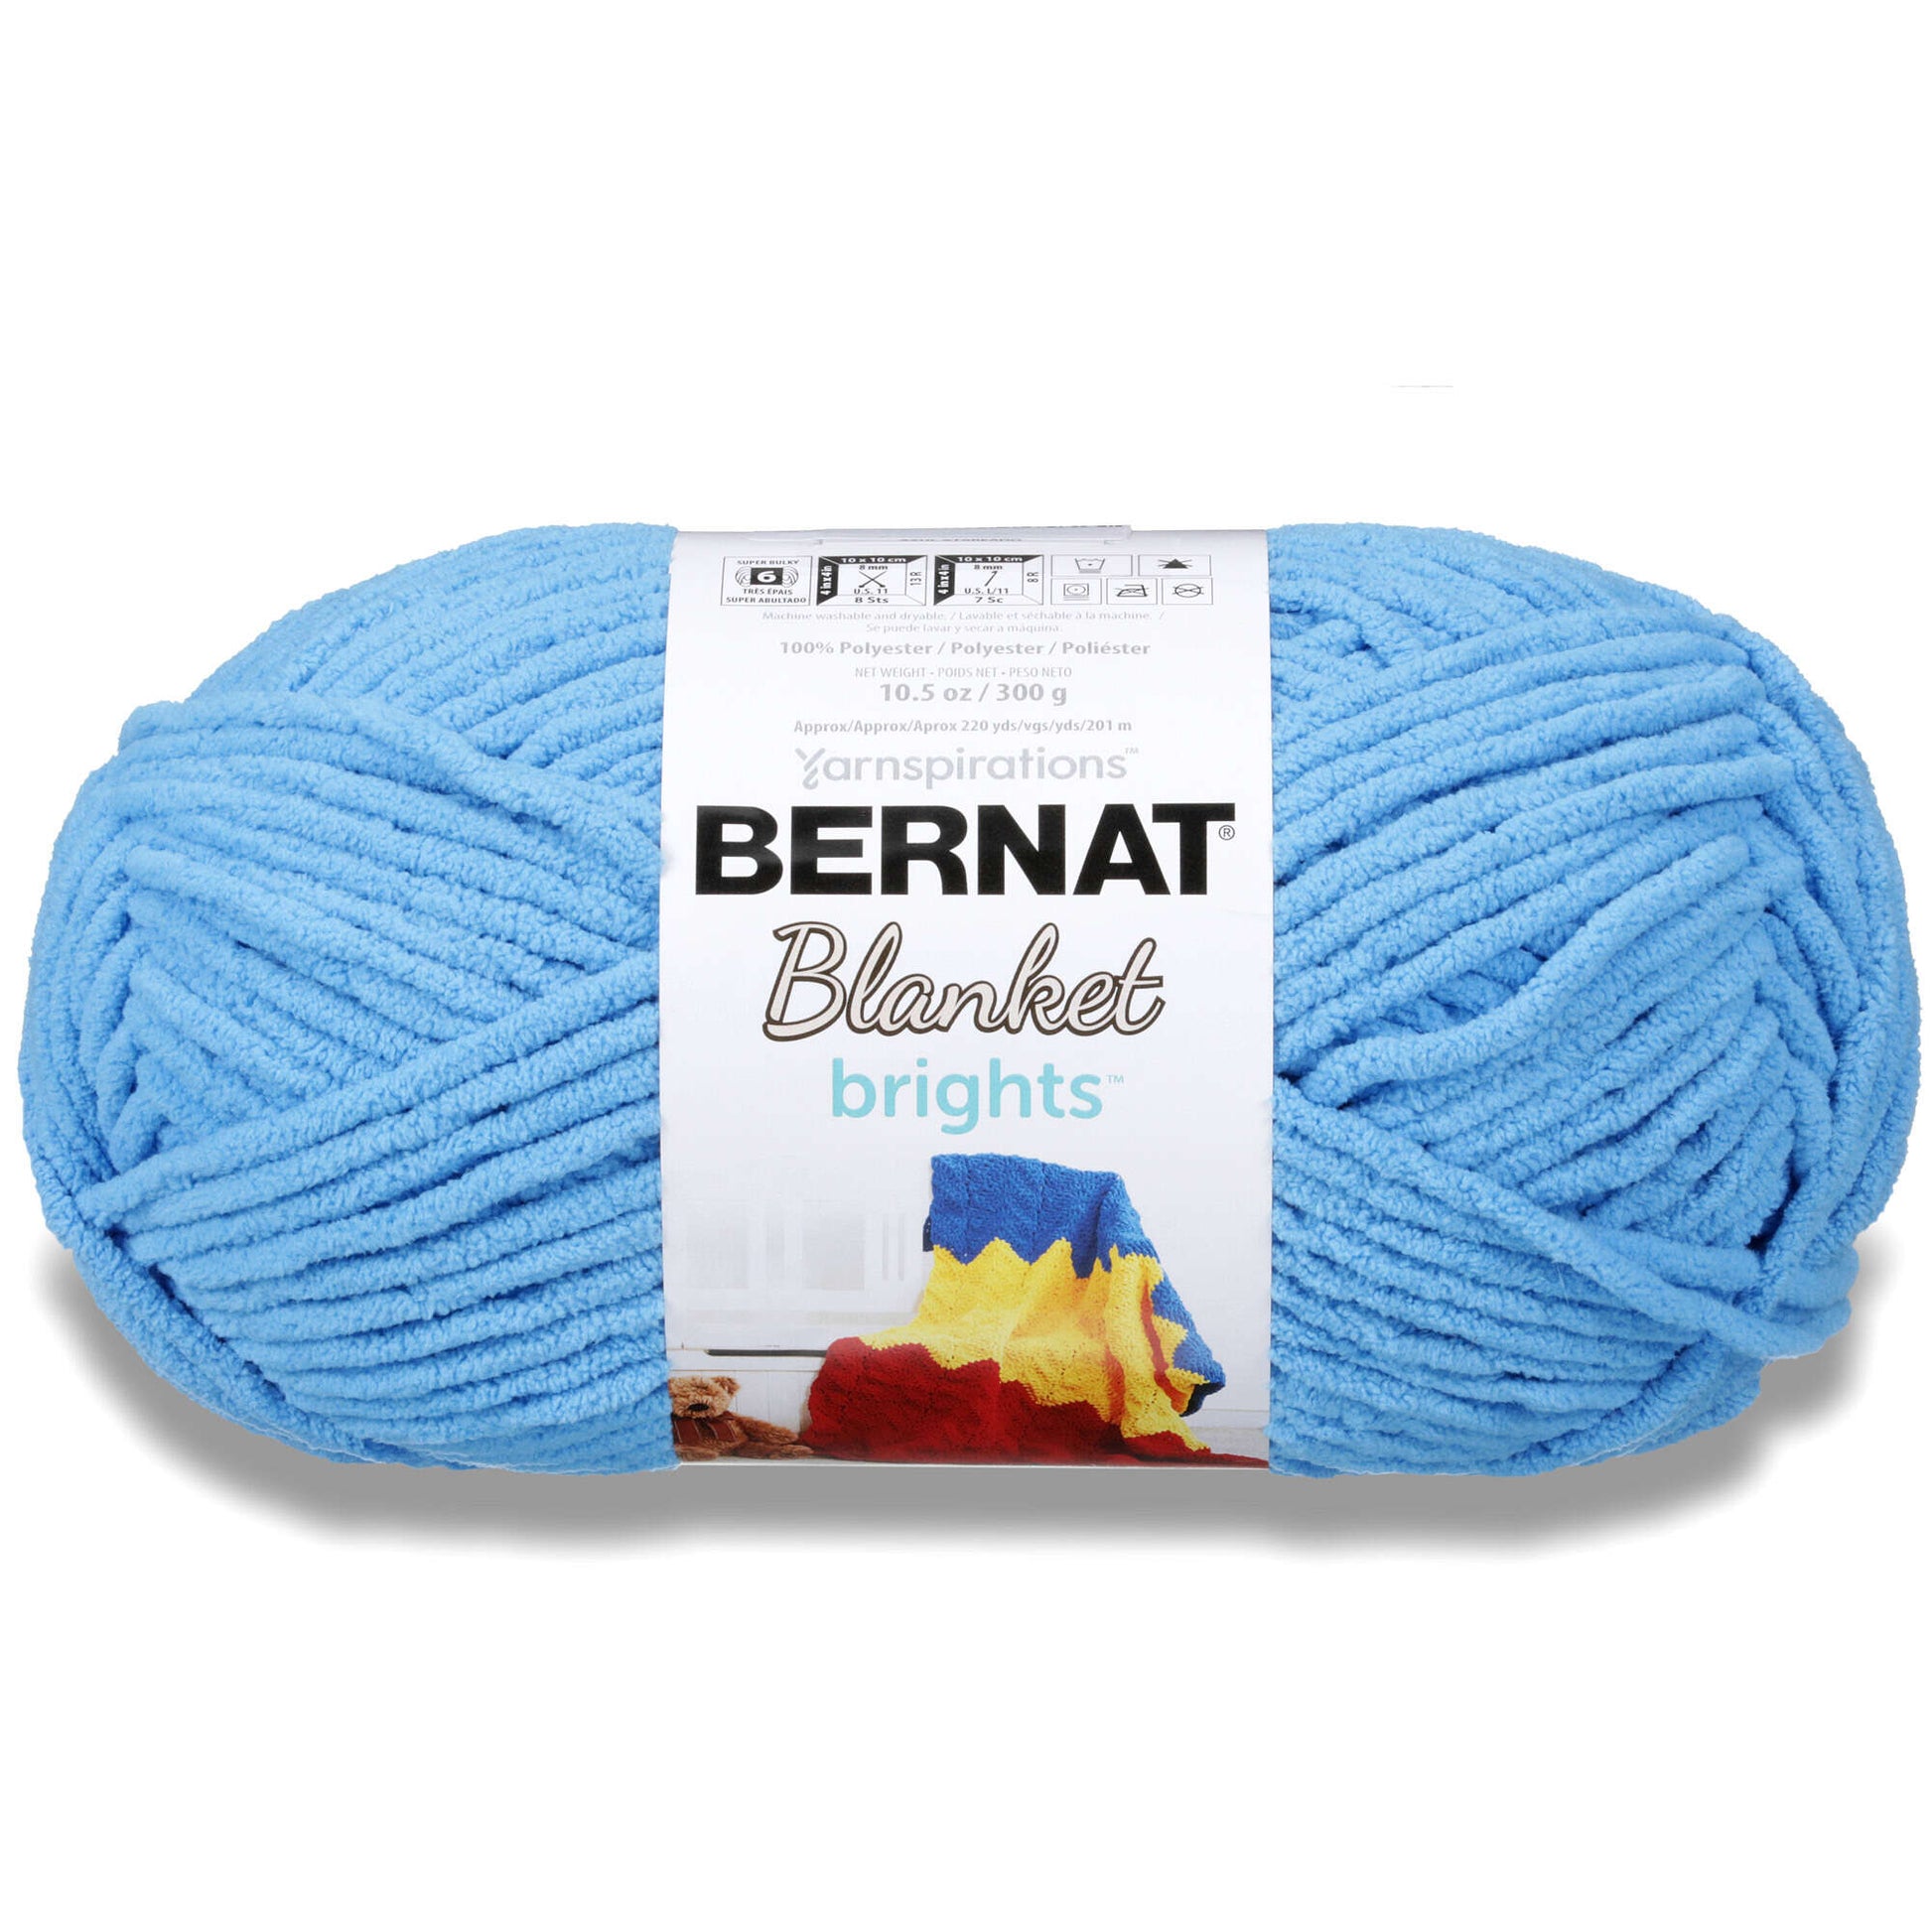 Bernat Blanket Brights Yarn (300g/10.5oz) Busy Blue